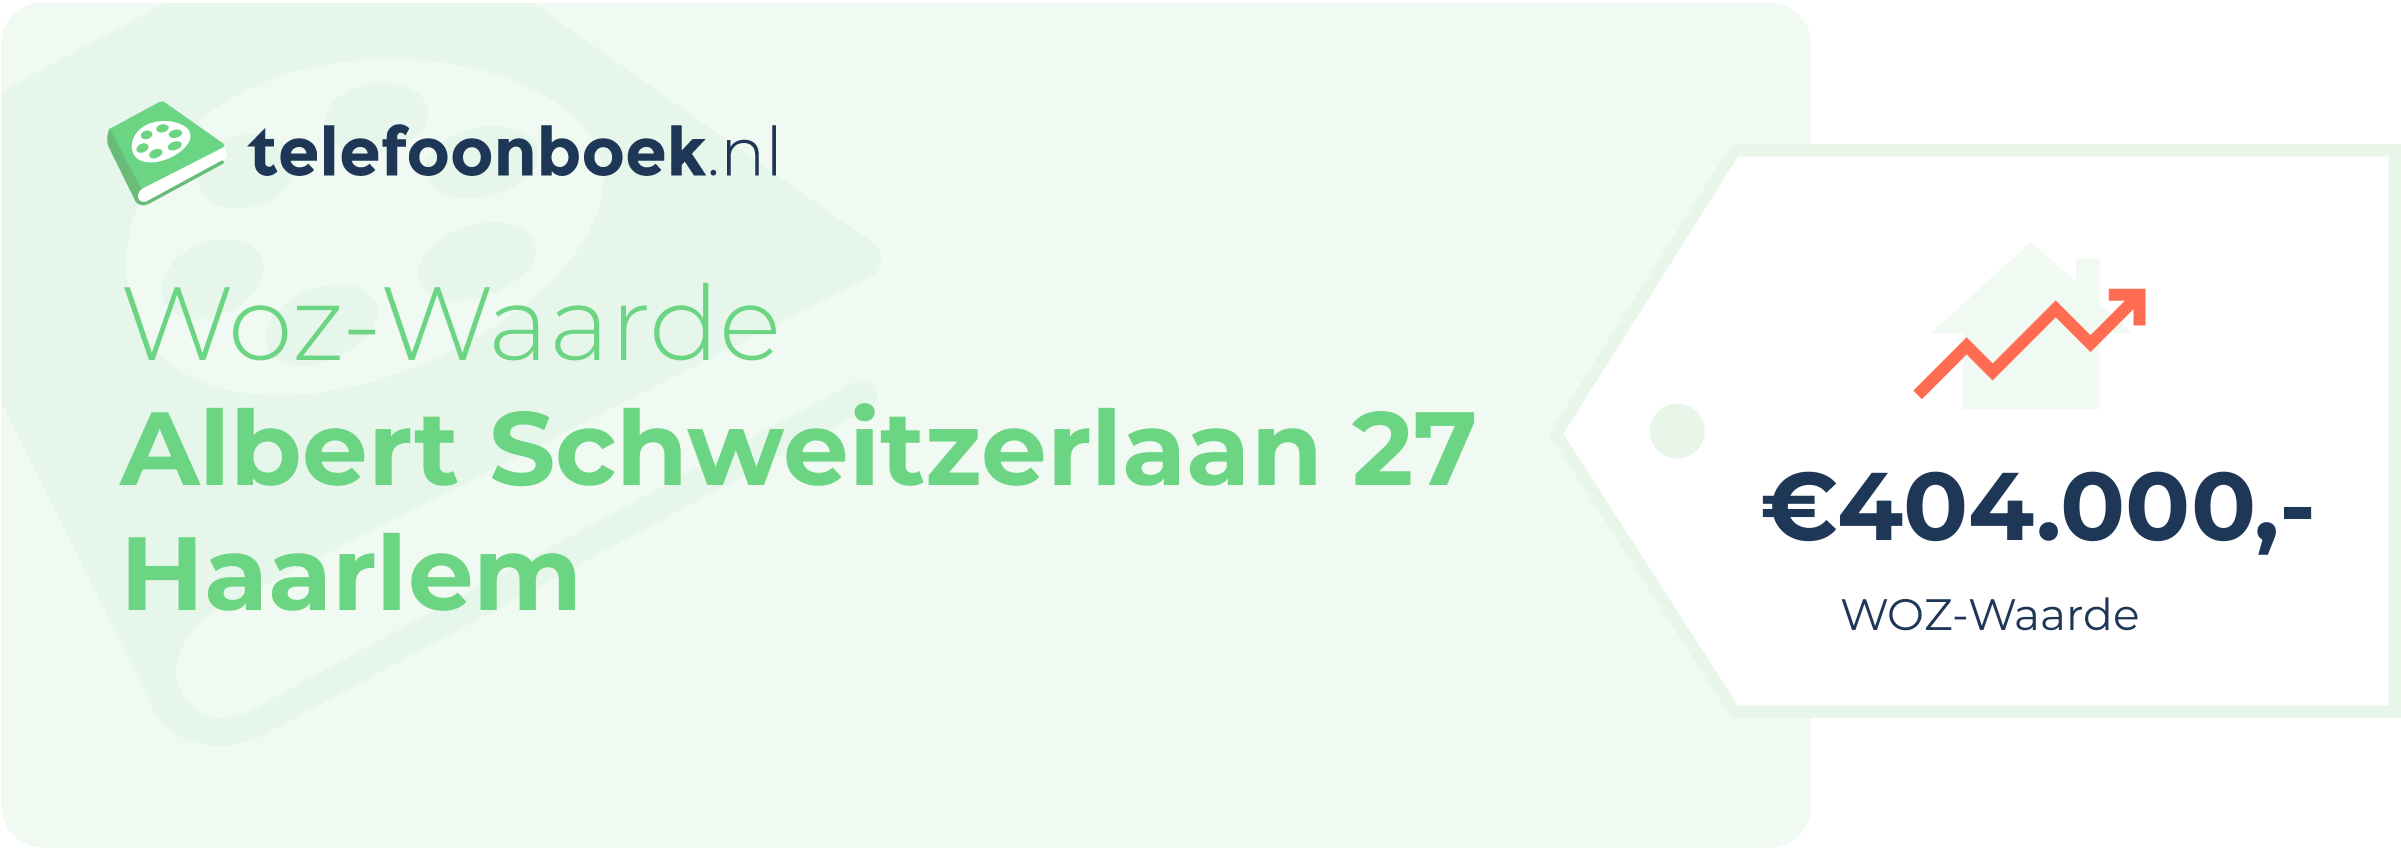 WOZ-waarde Albert Schweitzerlaan 27 Haarlem